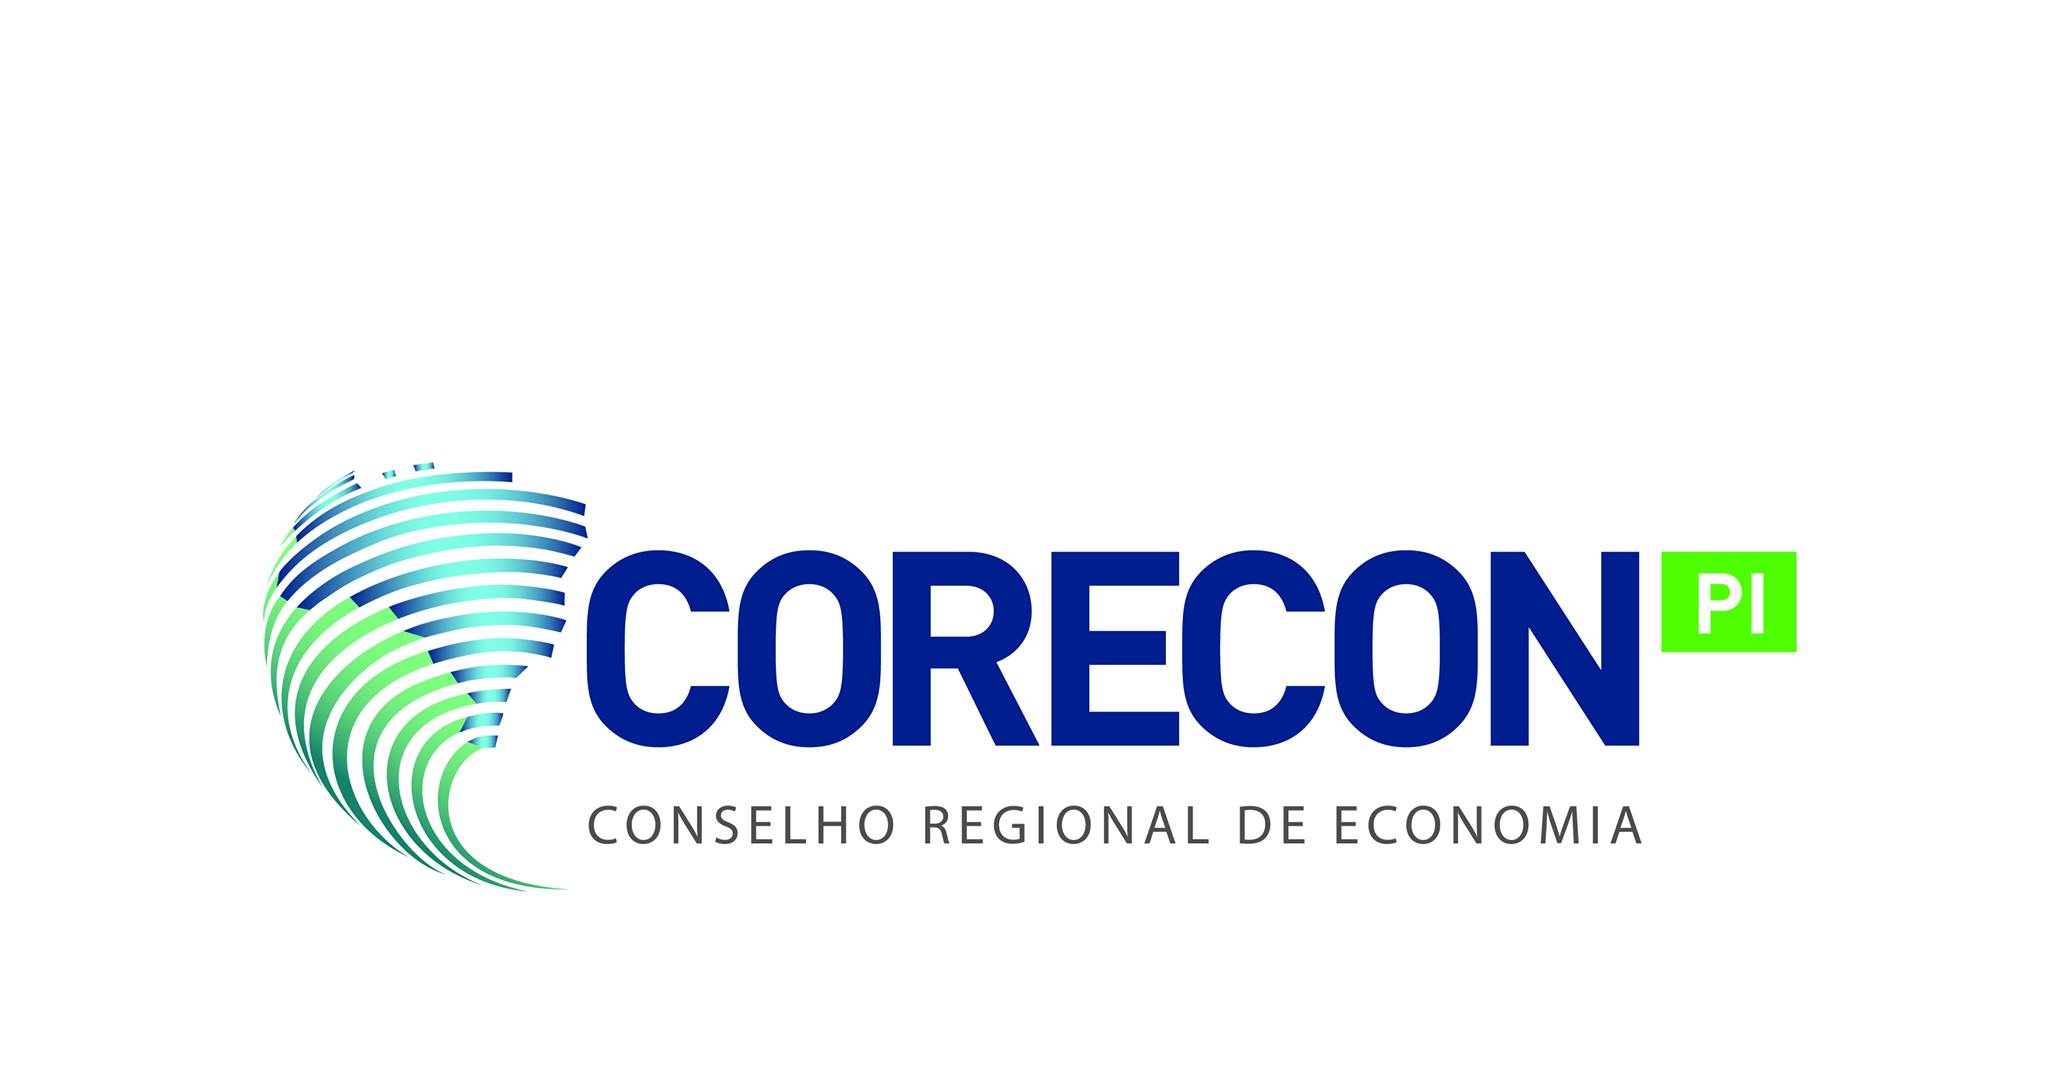 Conselho Regional de Economia do Piauí- CORECON